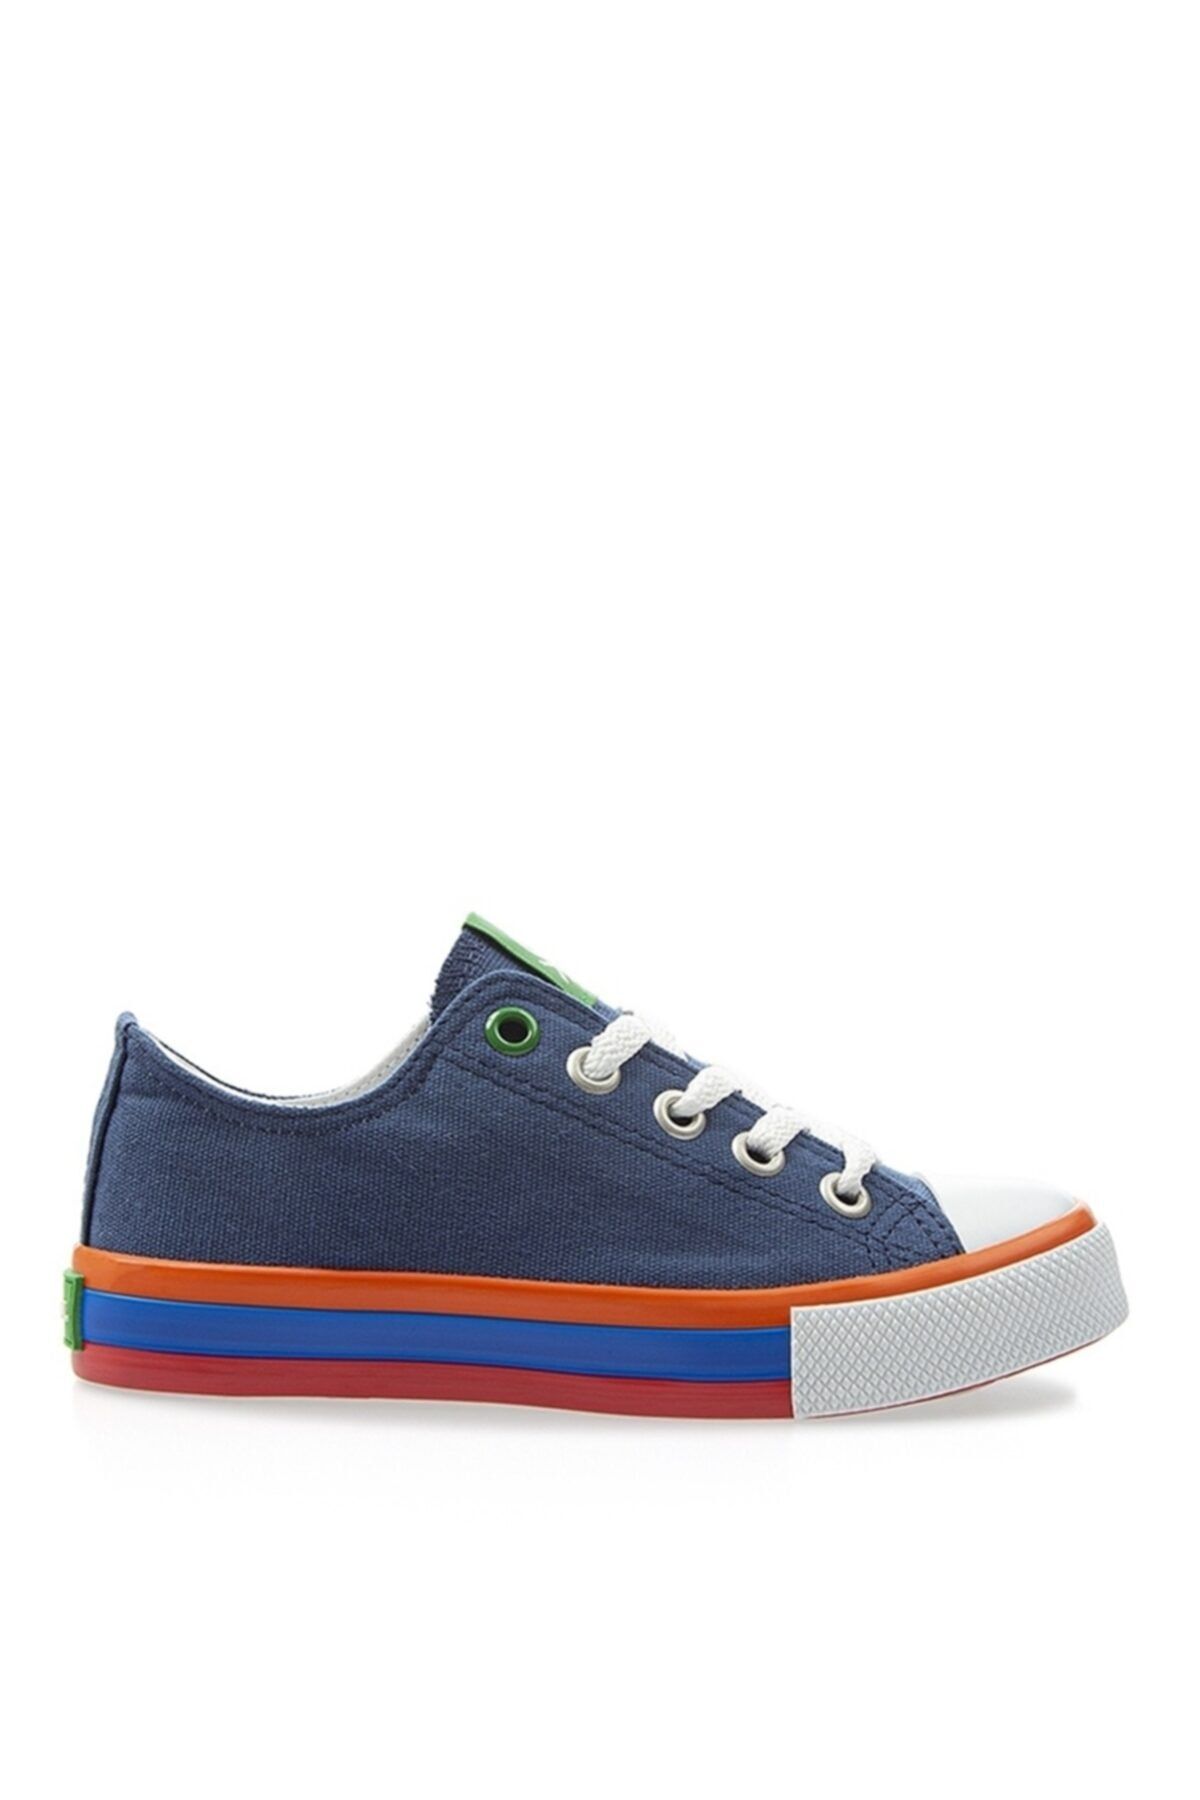 Benetton Erkek Çocuk Yürüyüş Ayakkabısı